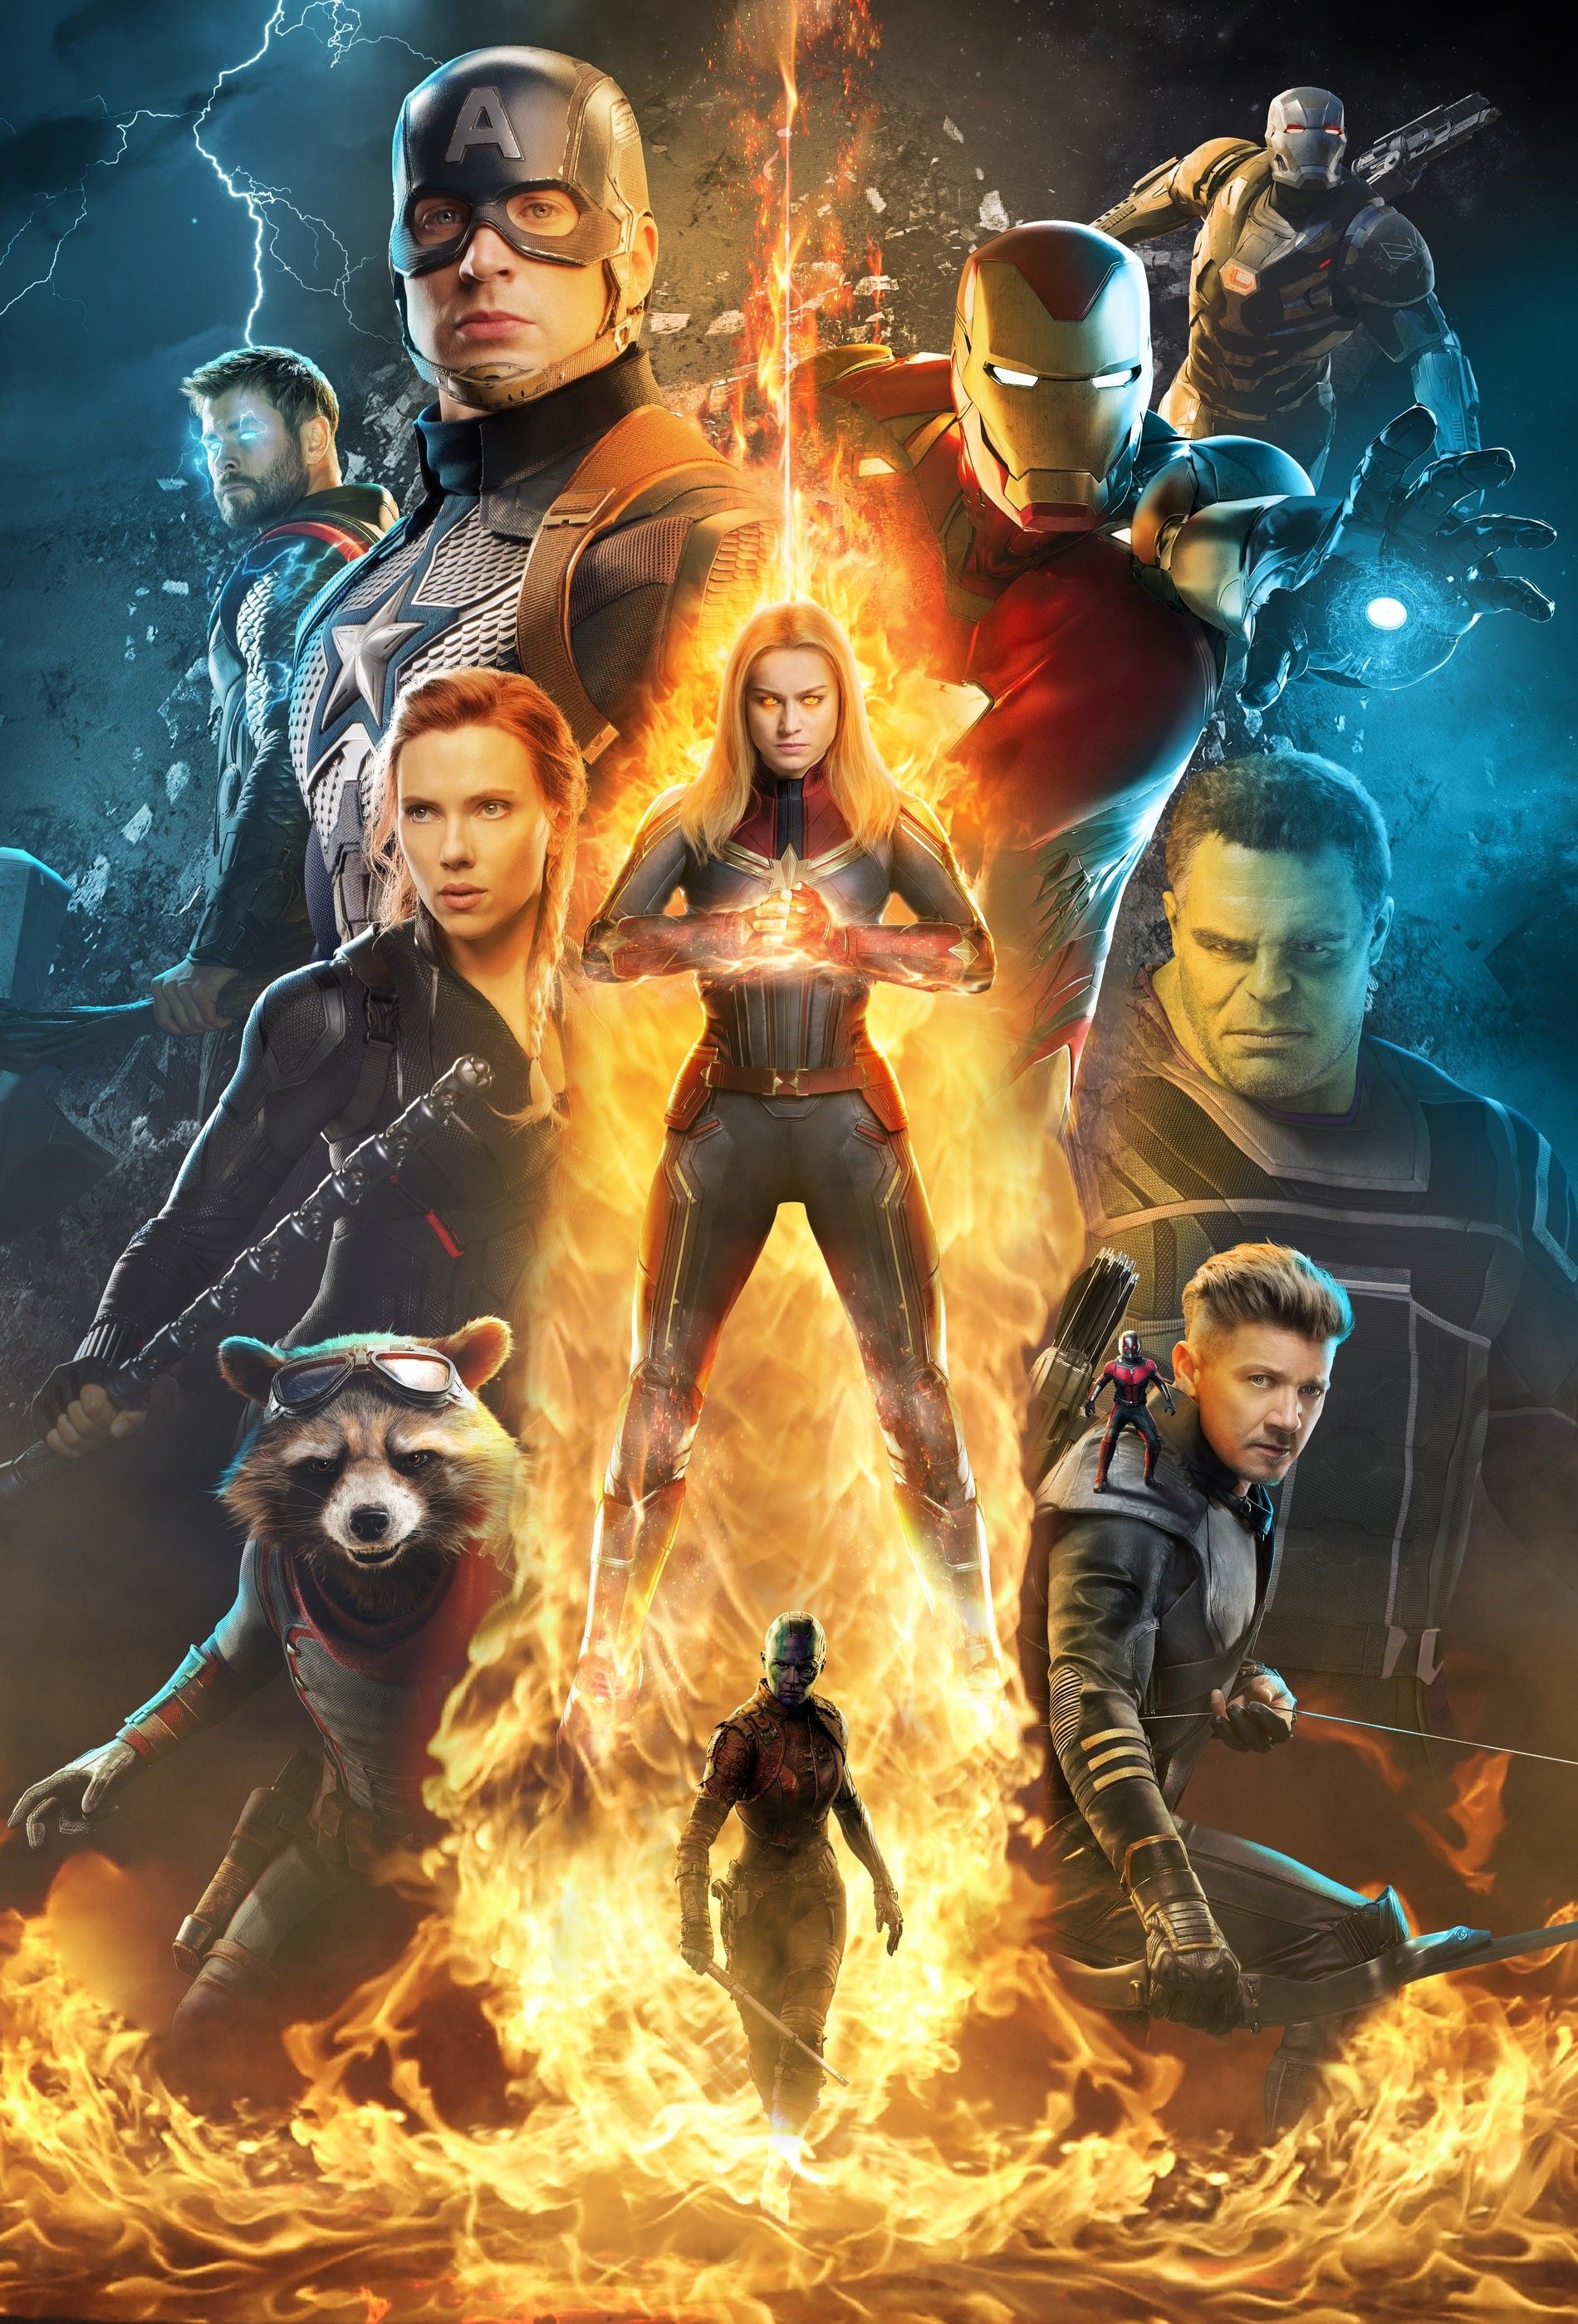 Avengers Endgame alternate poster Smart Hulk